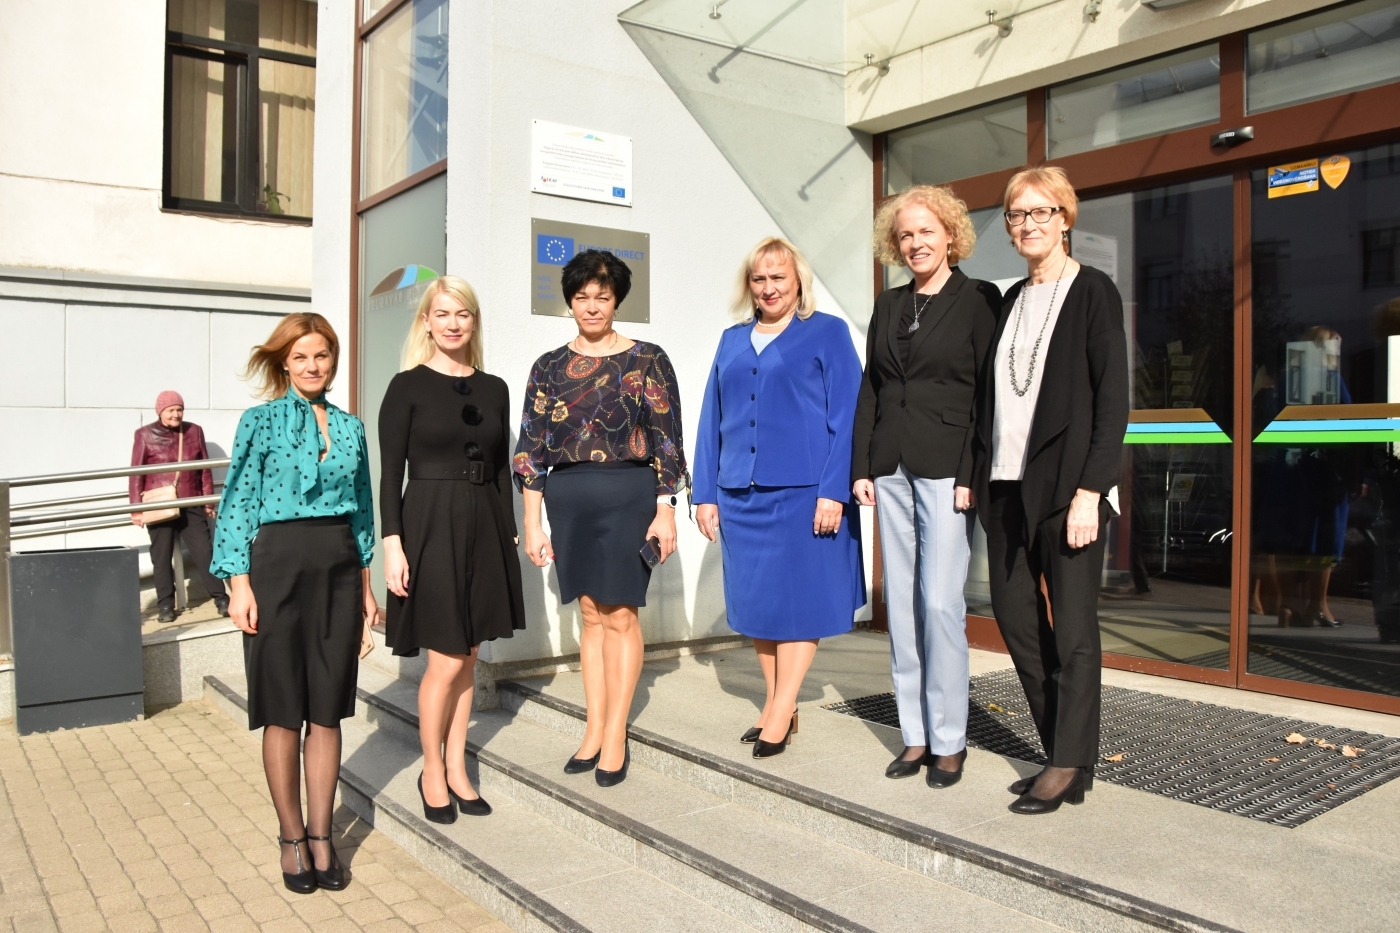 Atklāts Europe Direct centra Jelgavā jaunais darbības periods